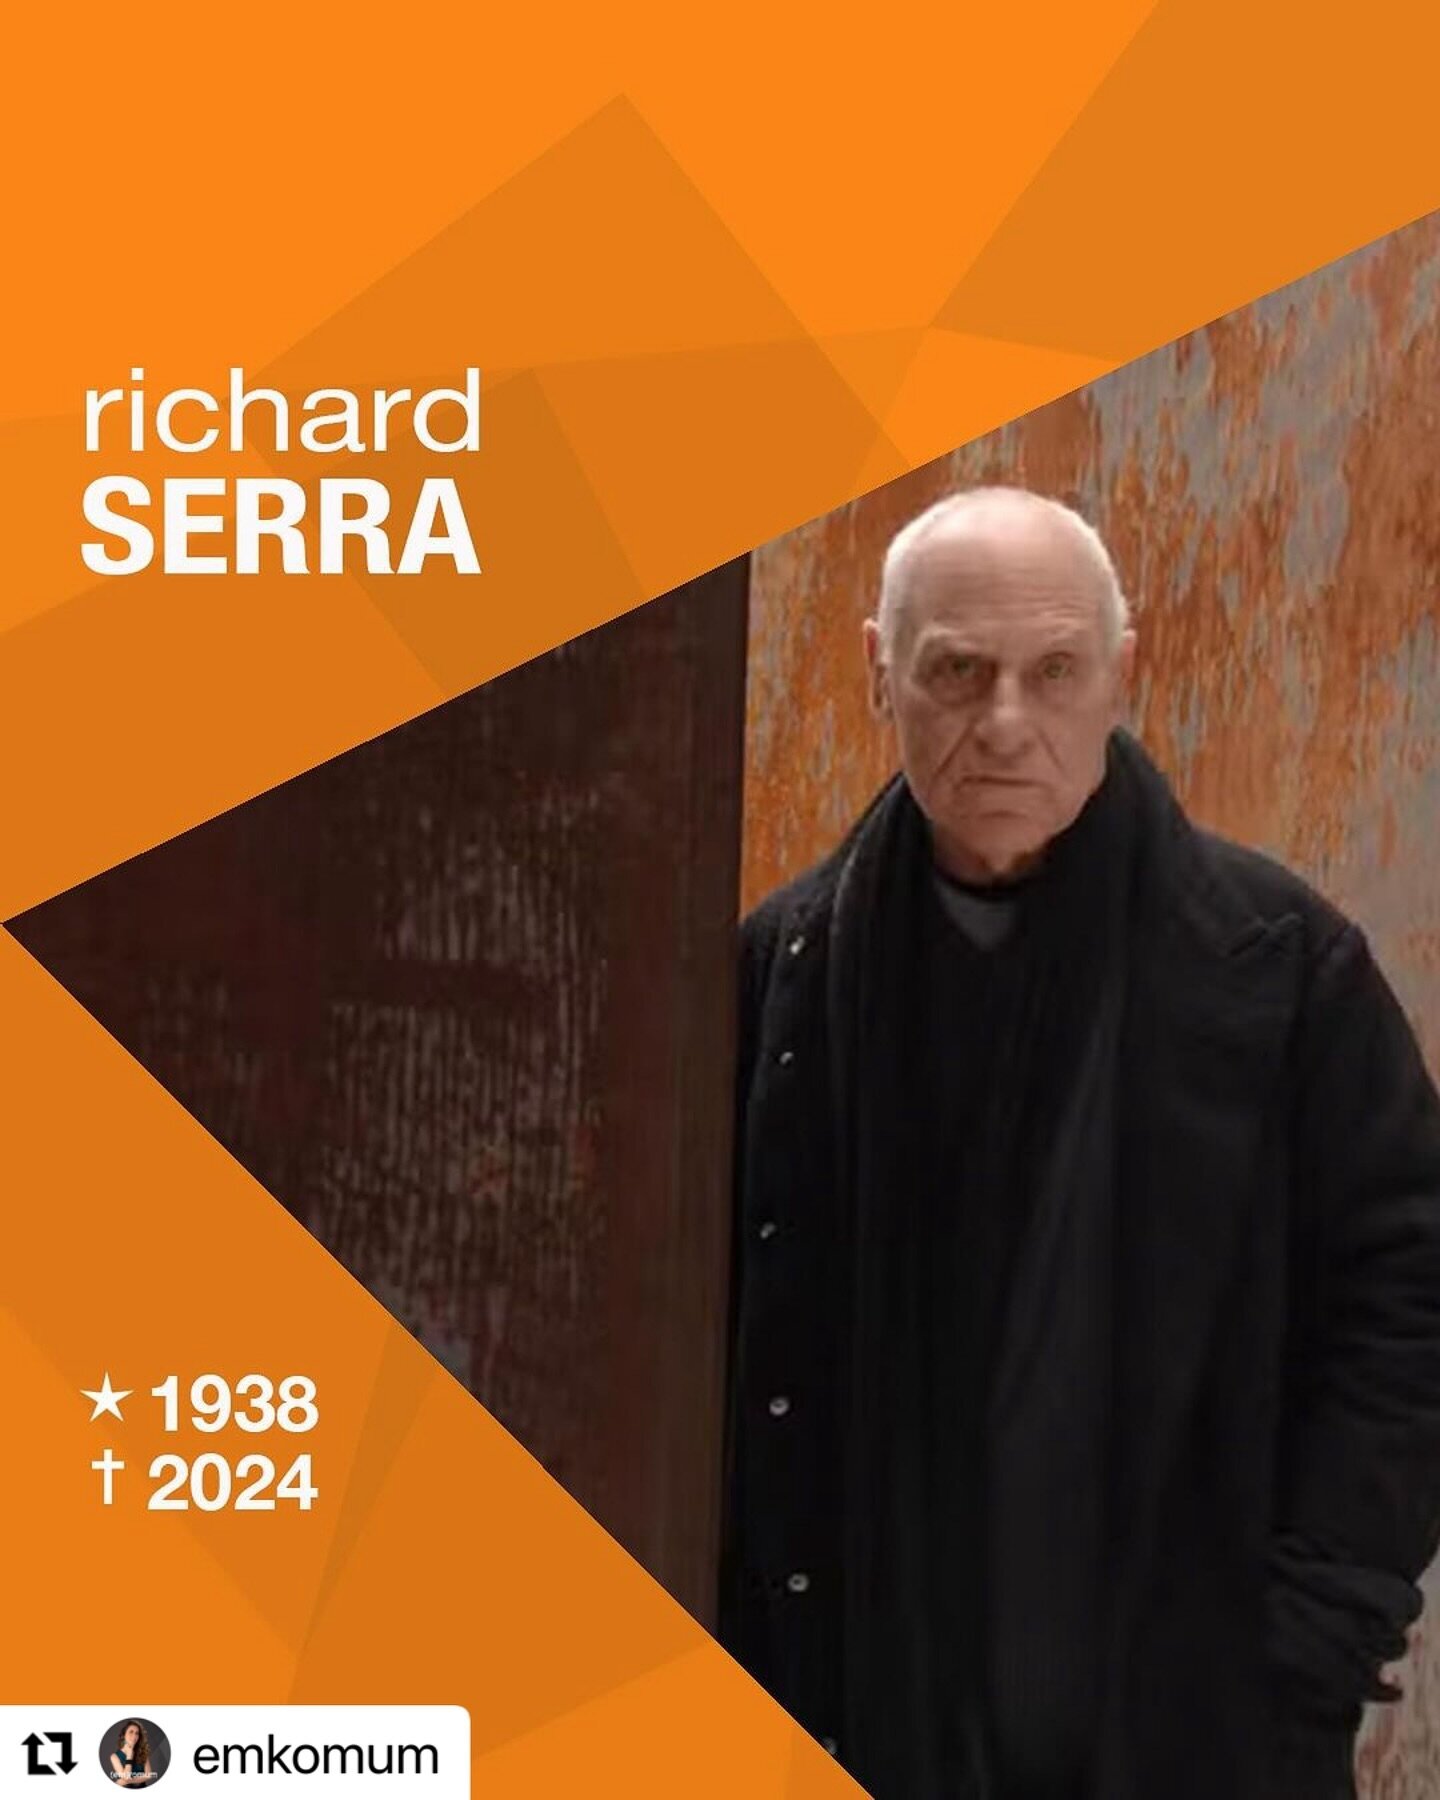 Esta lista de a&ccedil;&otilde;es &eacute; maravilhosa. Obrigada @emkomum por compartilhar.  Repost @emkomum with @use.repost
・・・
Morreu ontem, 26 de mar&ccedil;o, o artista estadunidense Richard Serra (1938-2024). Um dos maiores de seu tempo, sua pa